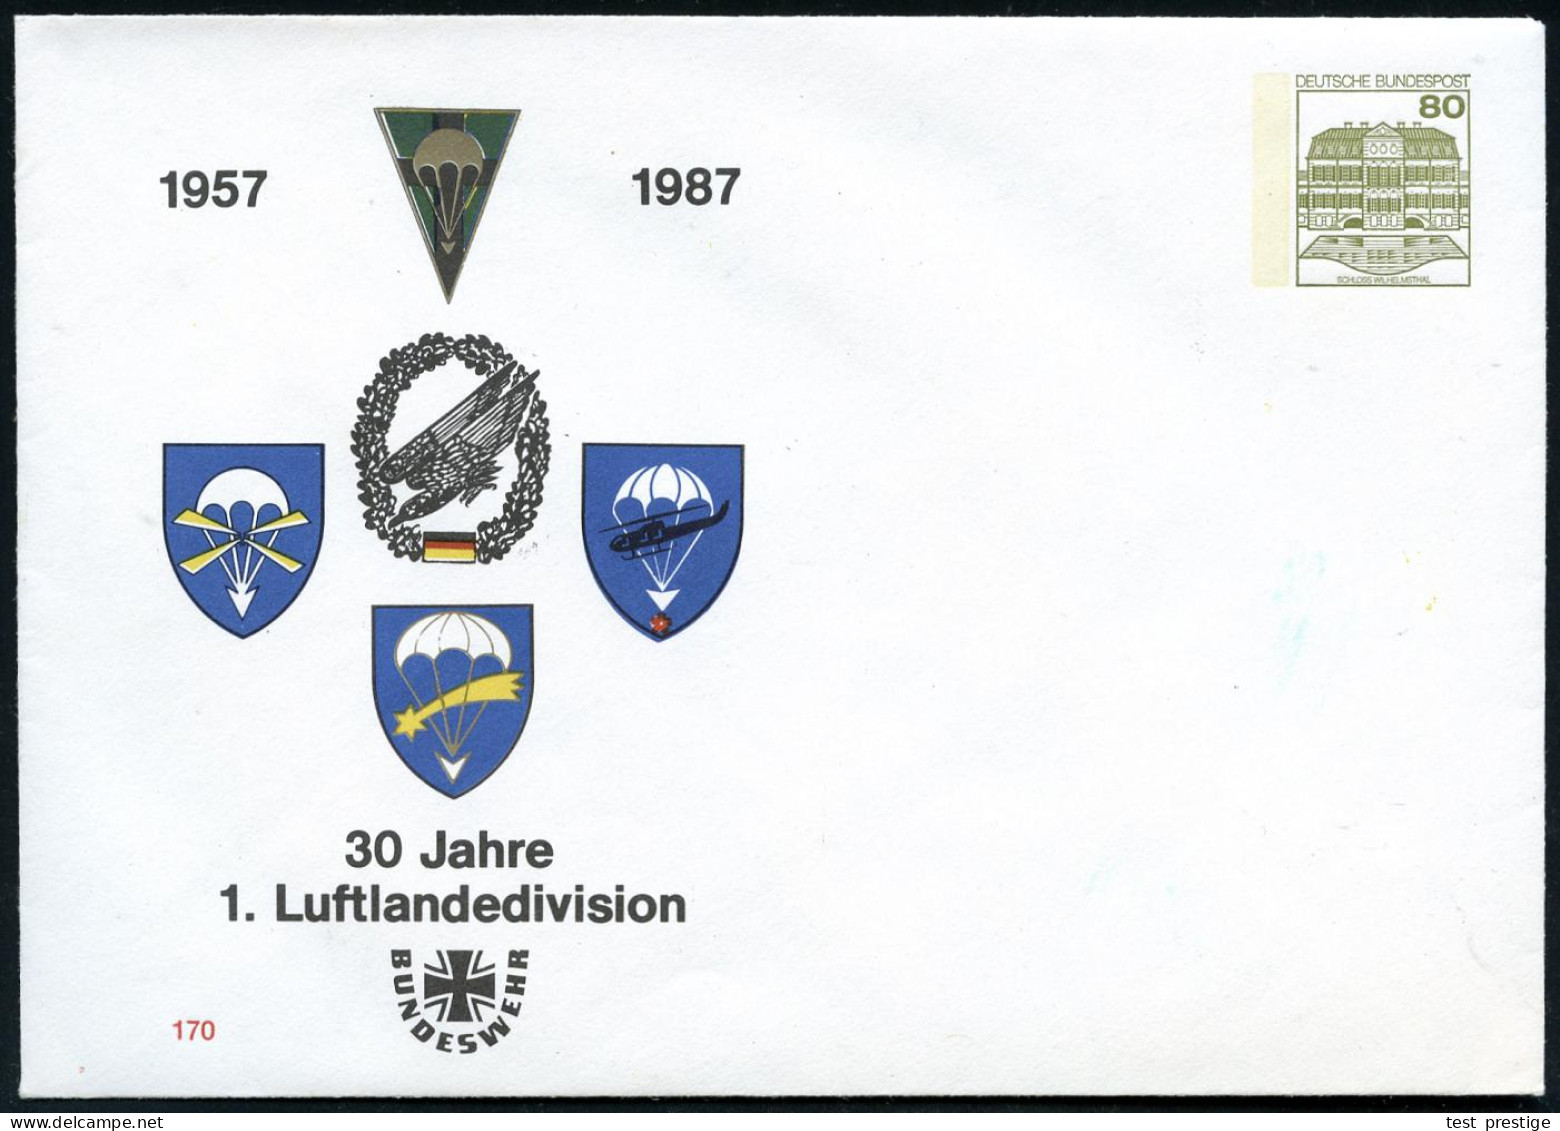 B.R.D. 1987 PU 80 Pf. Burgen, Oliv: 1957 1987, 30 Jahre 1. Luftlandedivision (Fallschirm-Abzeichen) Ungebr. - FALLSCHIRM - Parachutting